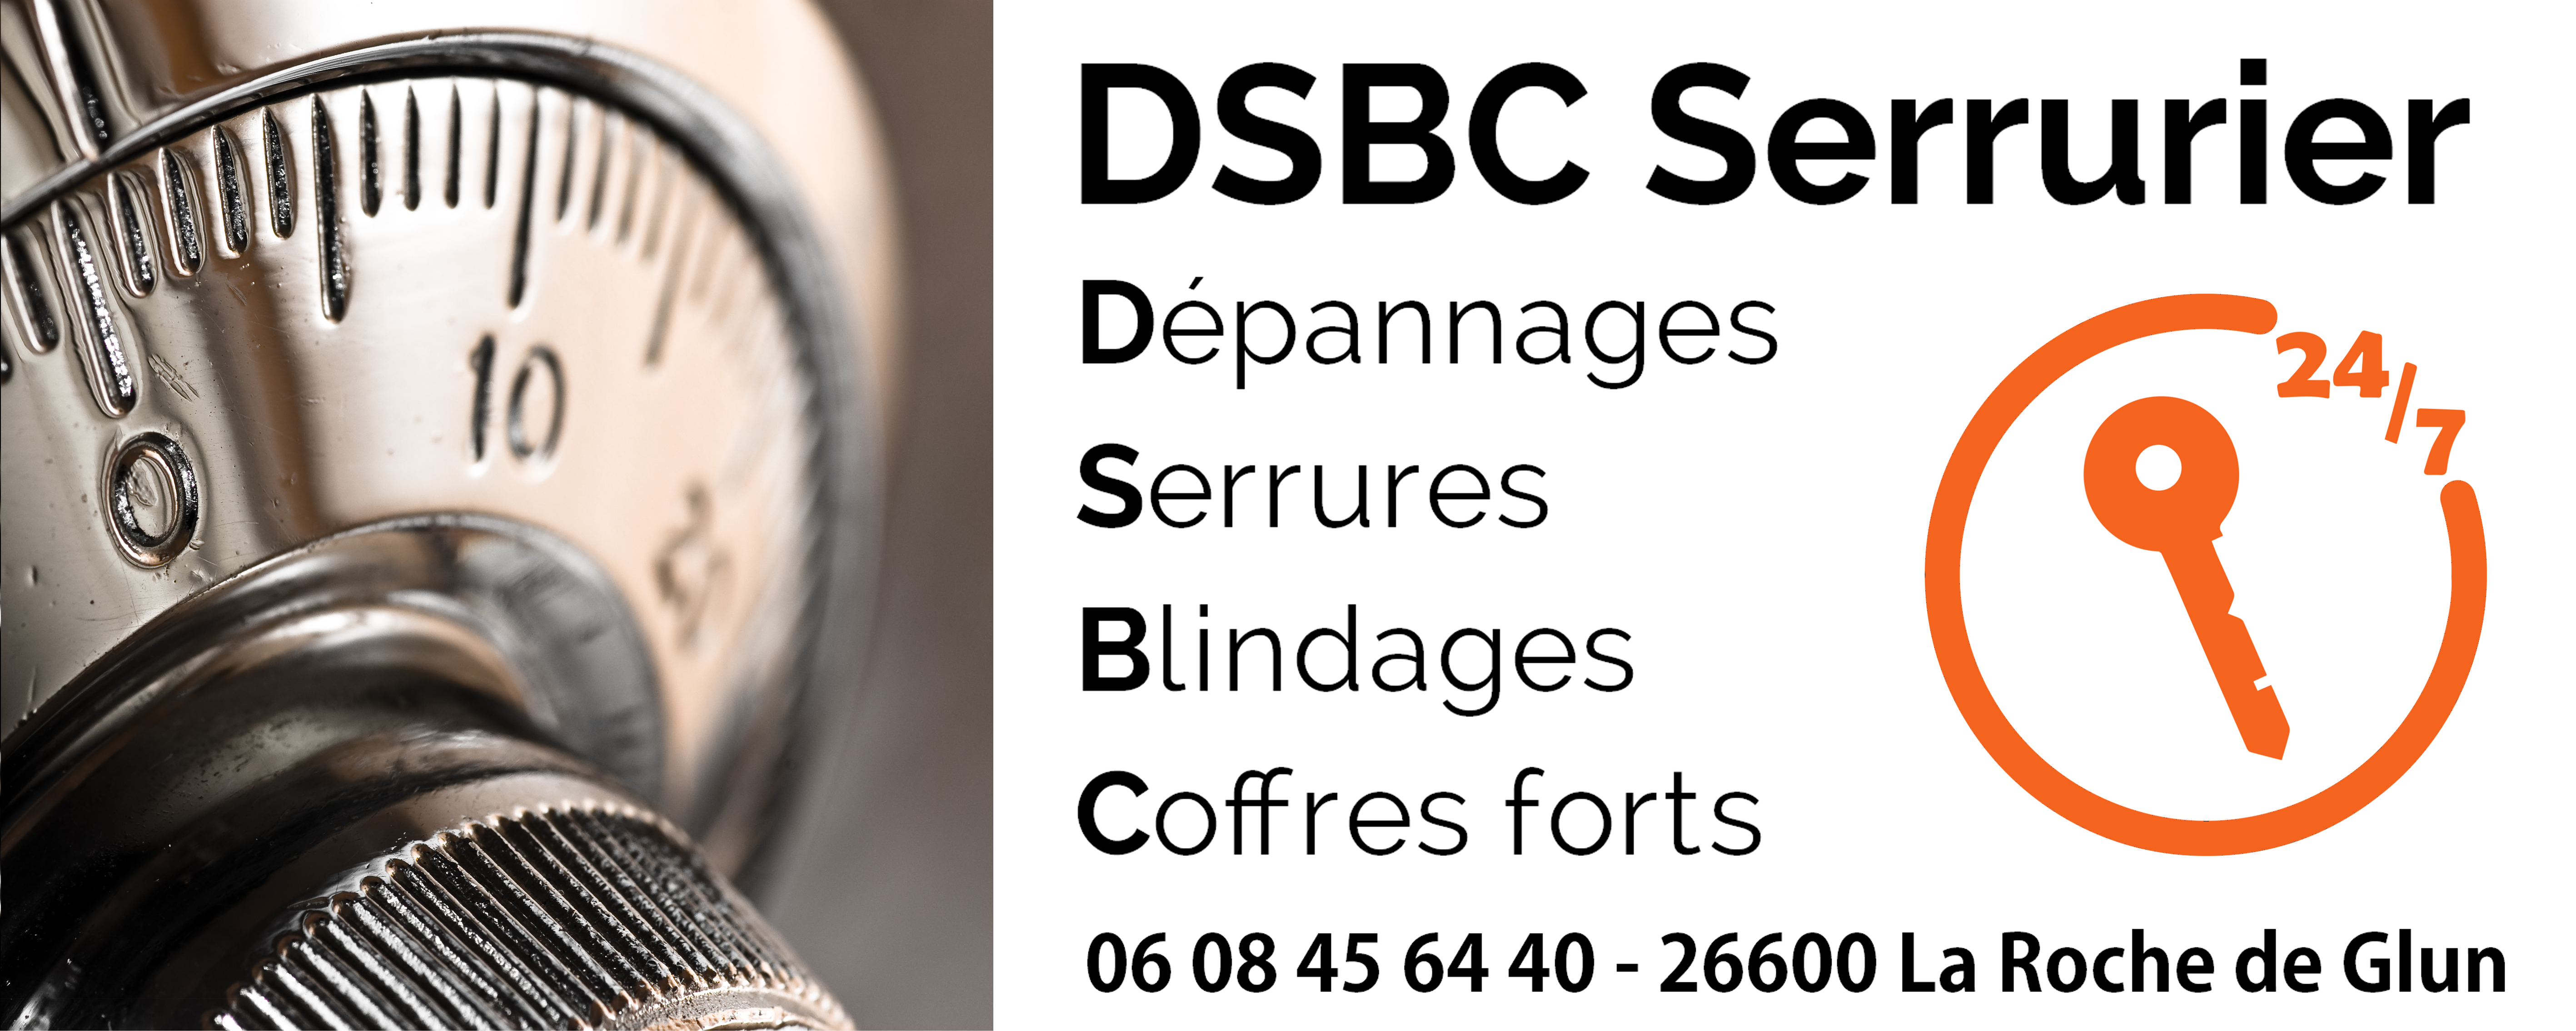 DSBC Serrurier